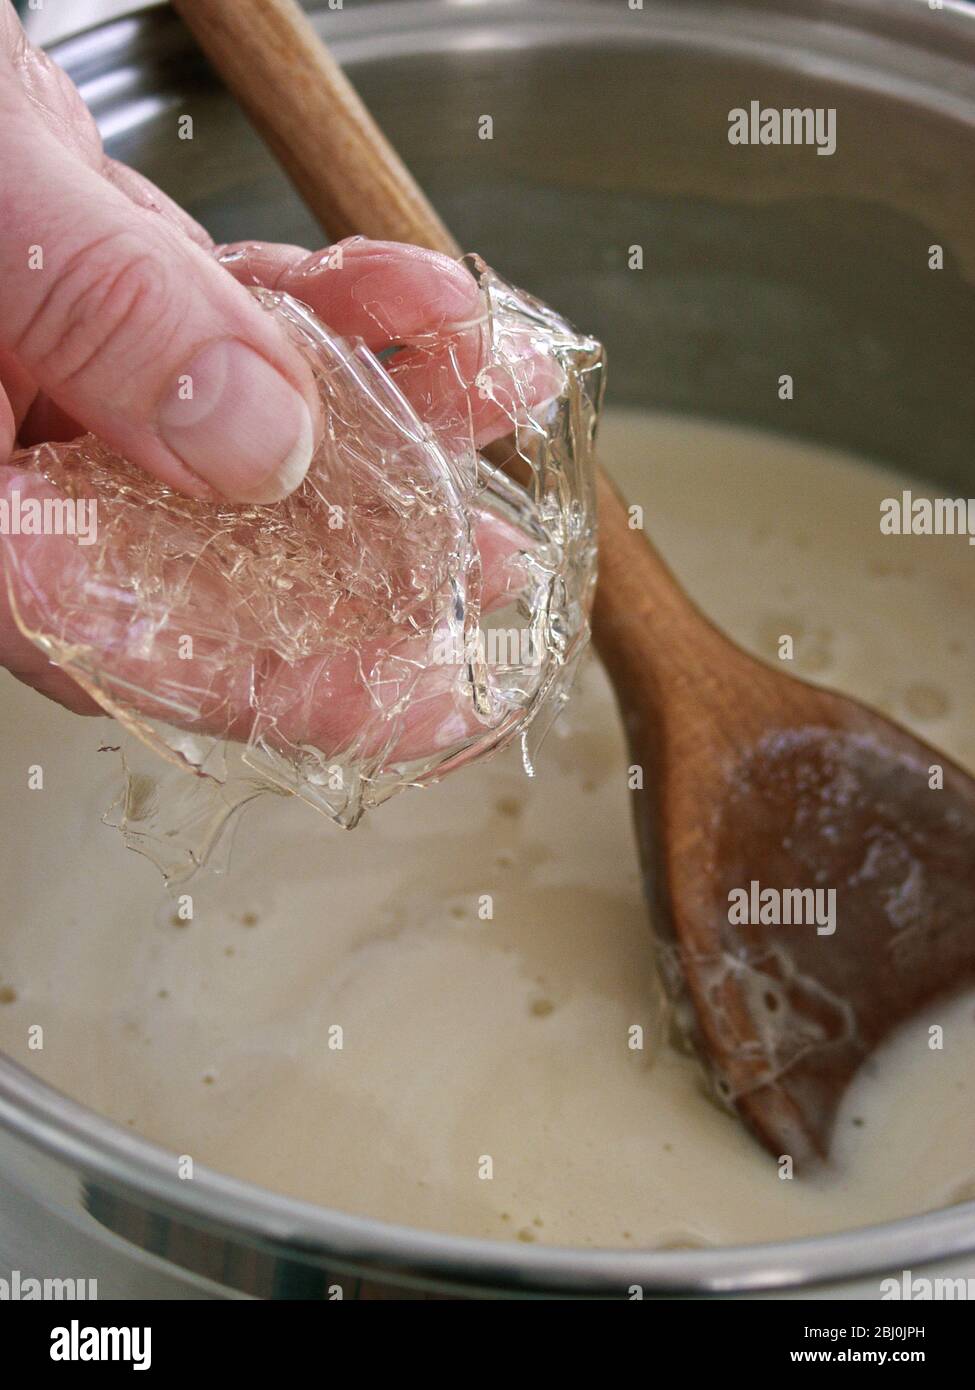 Aggiungere foglie di gelatina ammorbidita alla crema per addensare e regolare - - FOTOCAMERA DIGITALE OLYMPUS - Foto Stock